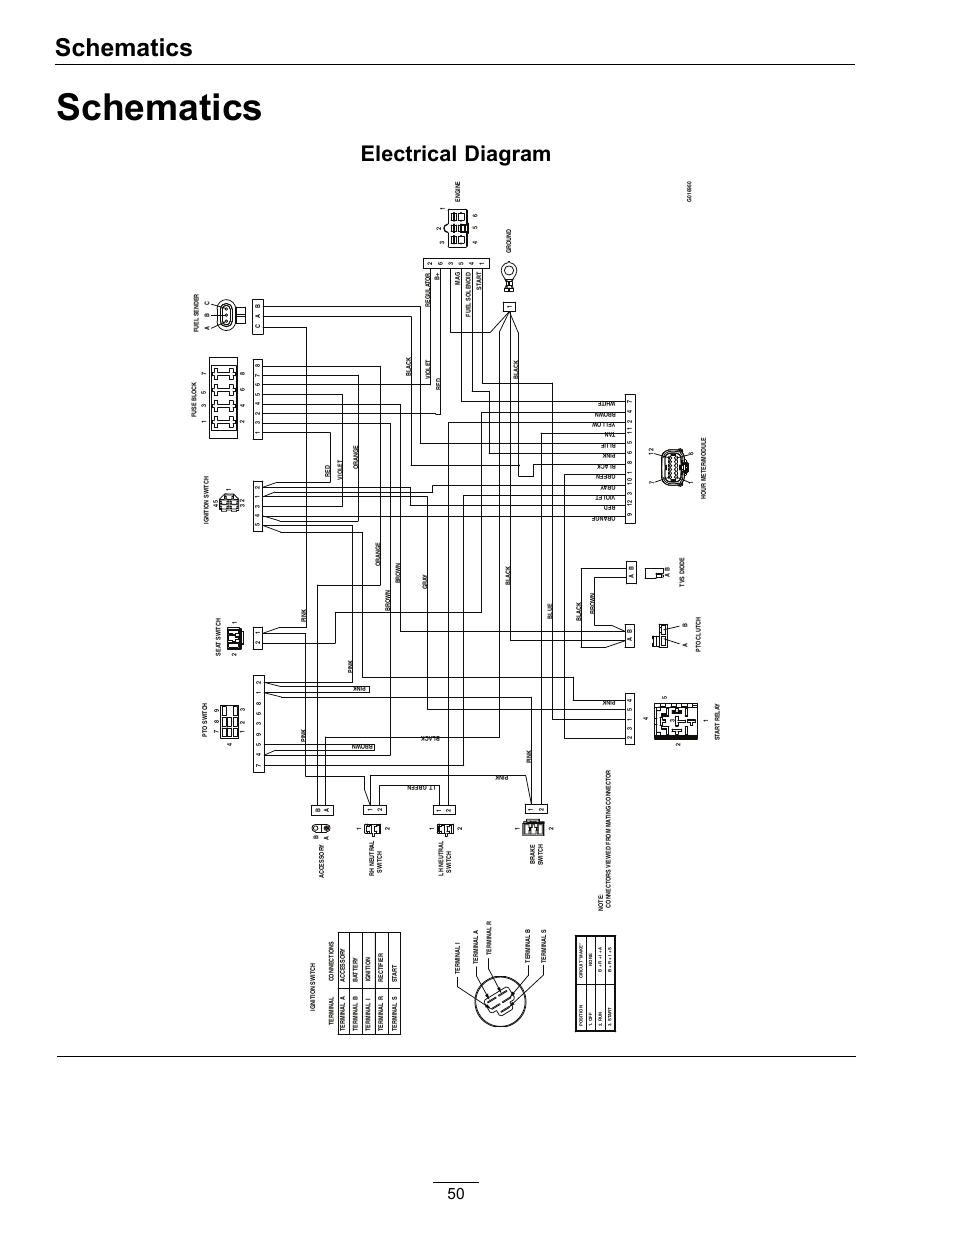 Wiring Diagram 5.7 Mercruiser